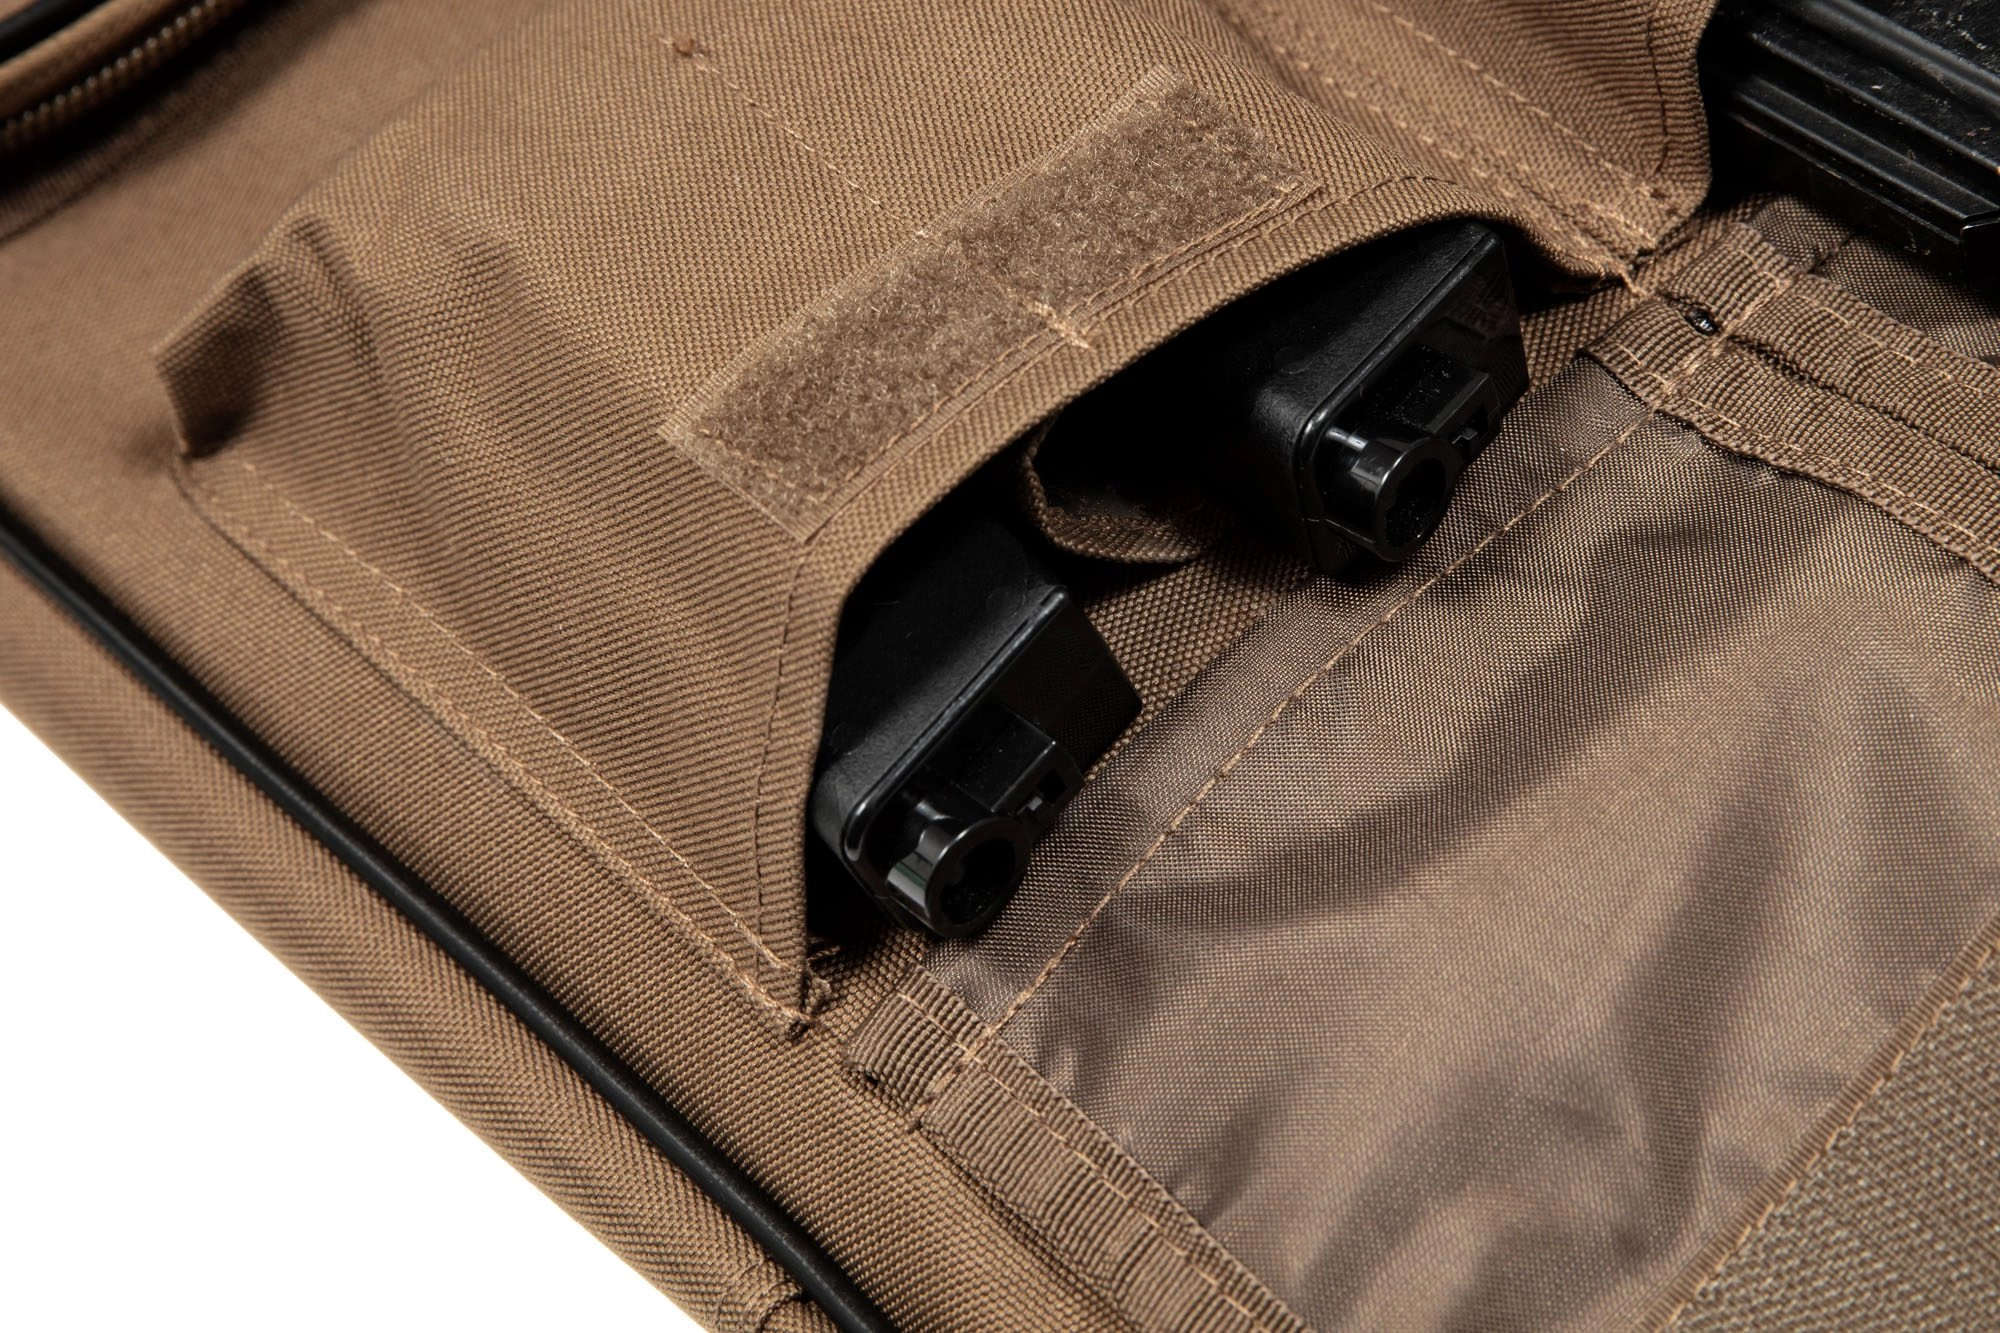 Gun Bag V1 - 98cm - Tan